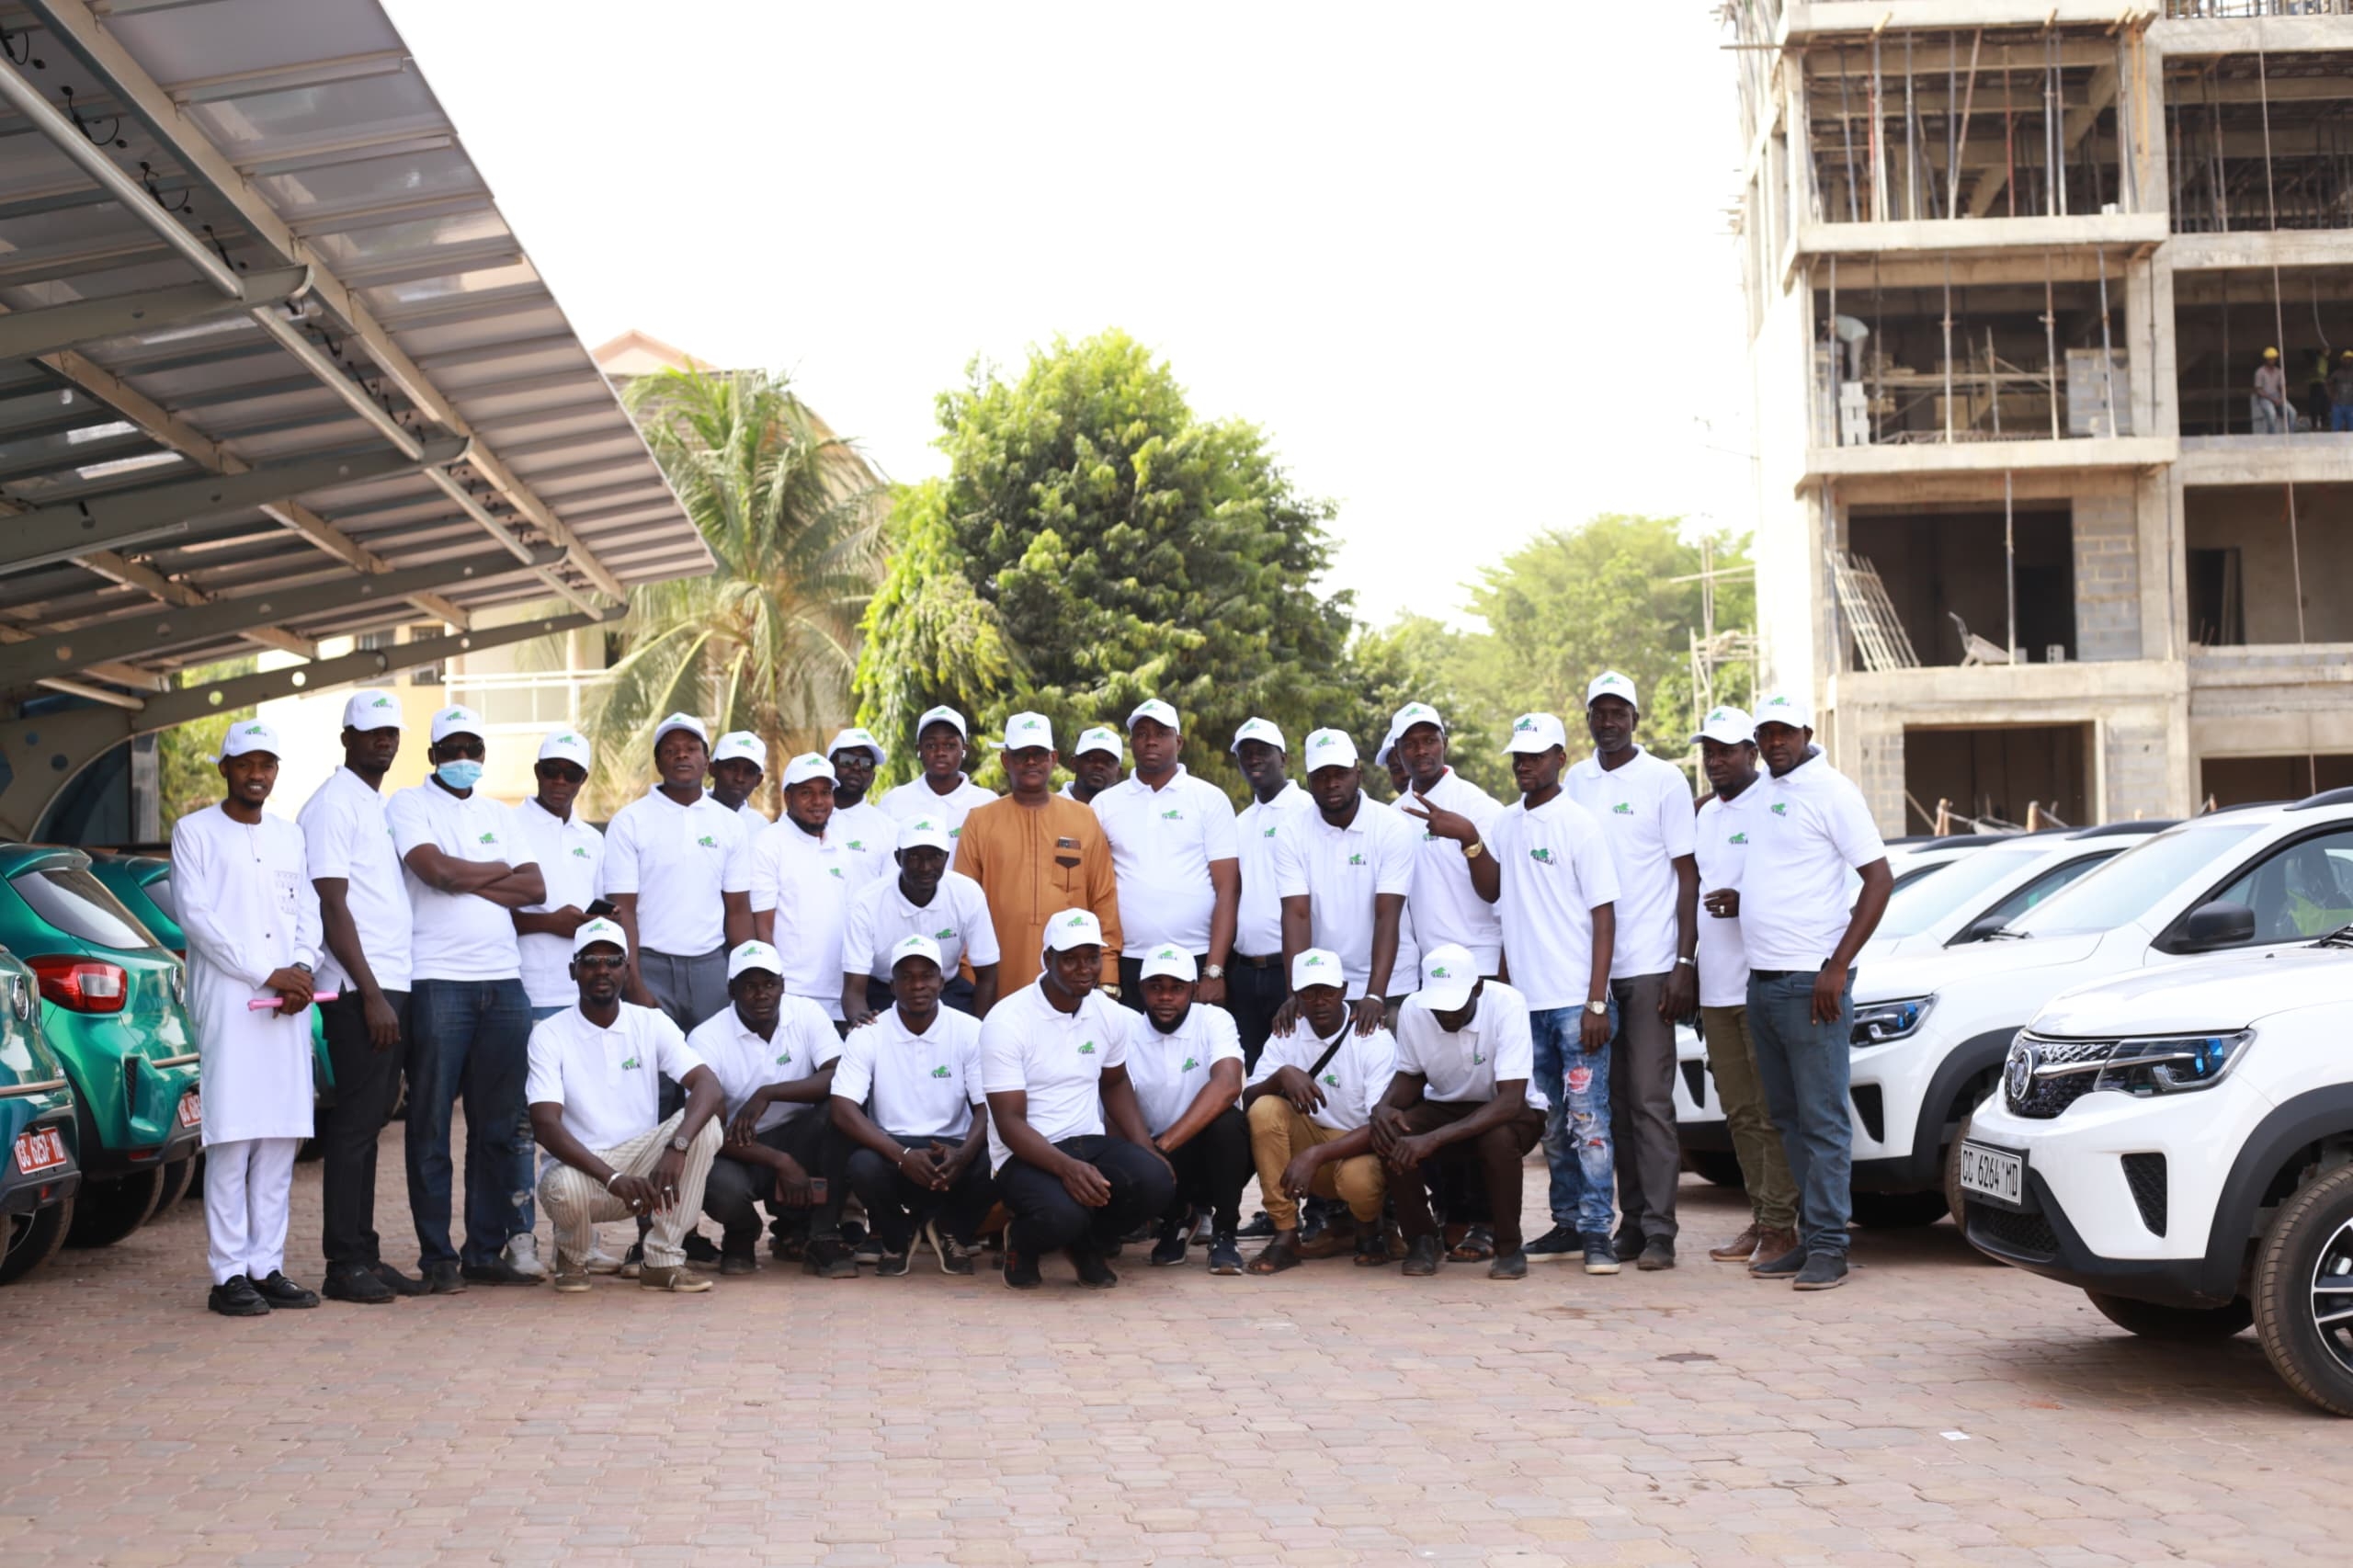 Daya și clienții săi lucrează împreună pentru a deschide o nouă eră a energiei verzi în Africa